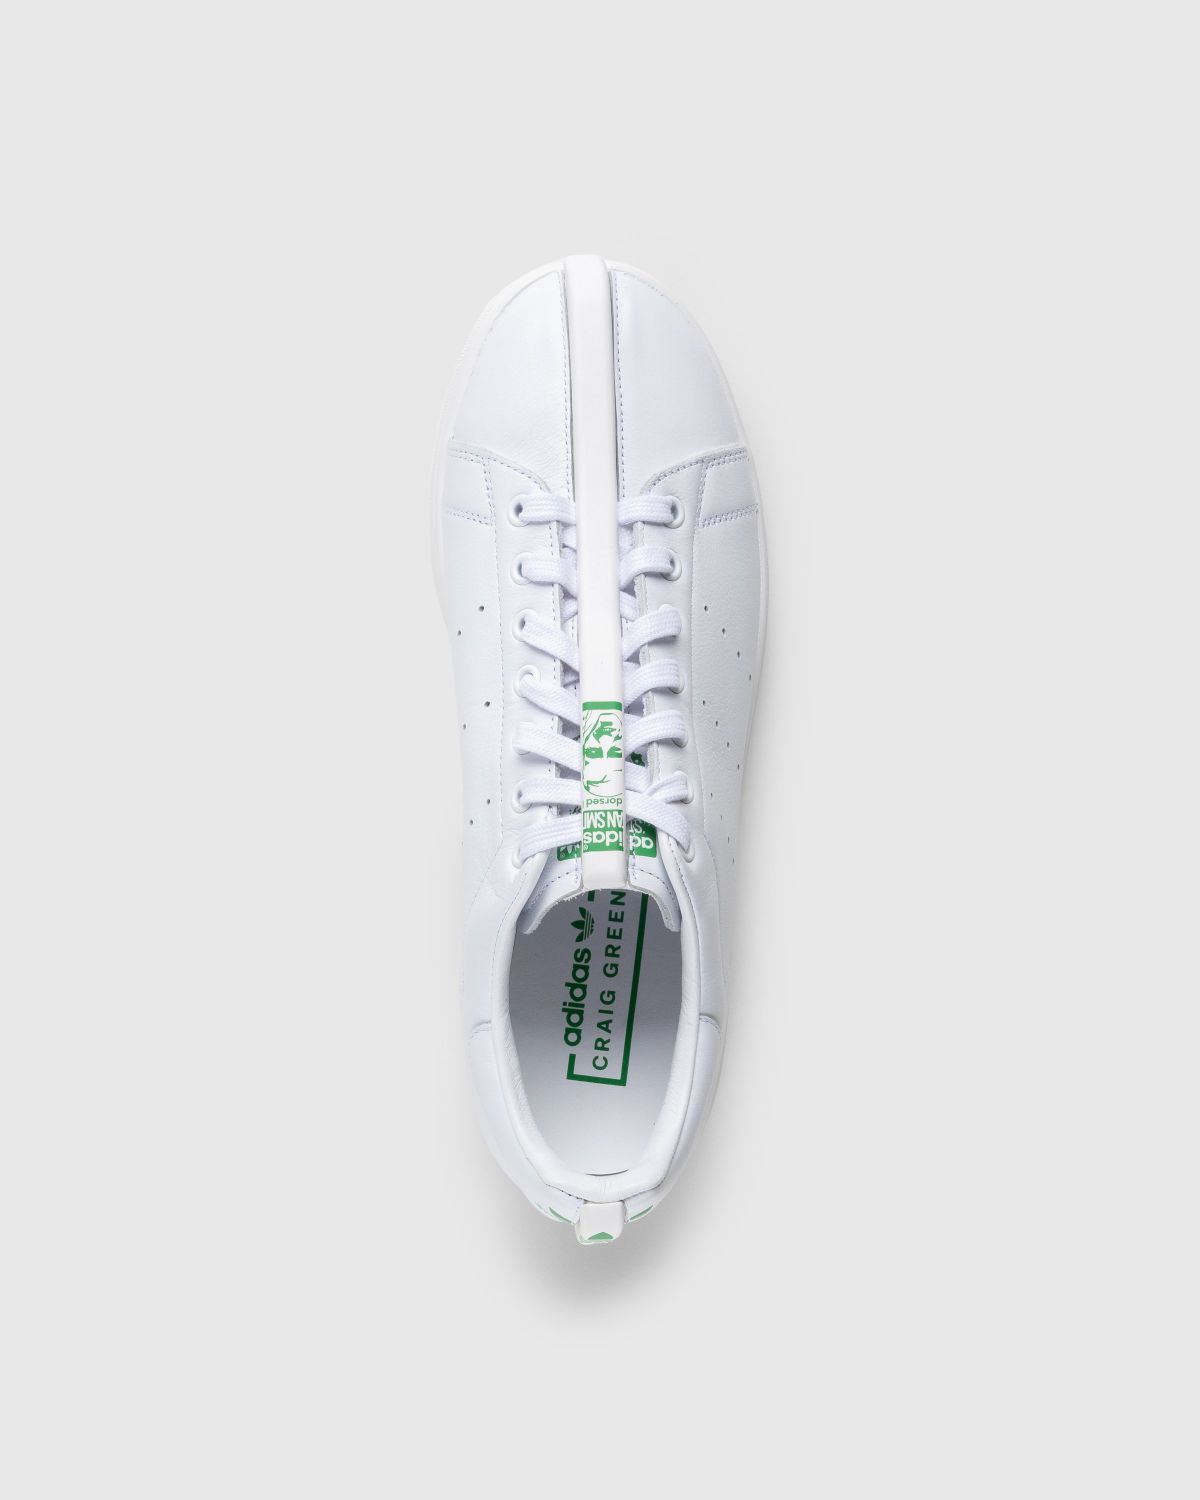 Adidas – CG Split Stan Smith White/Black - Sneakers - White - Image 5